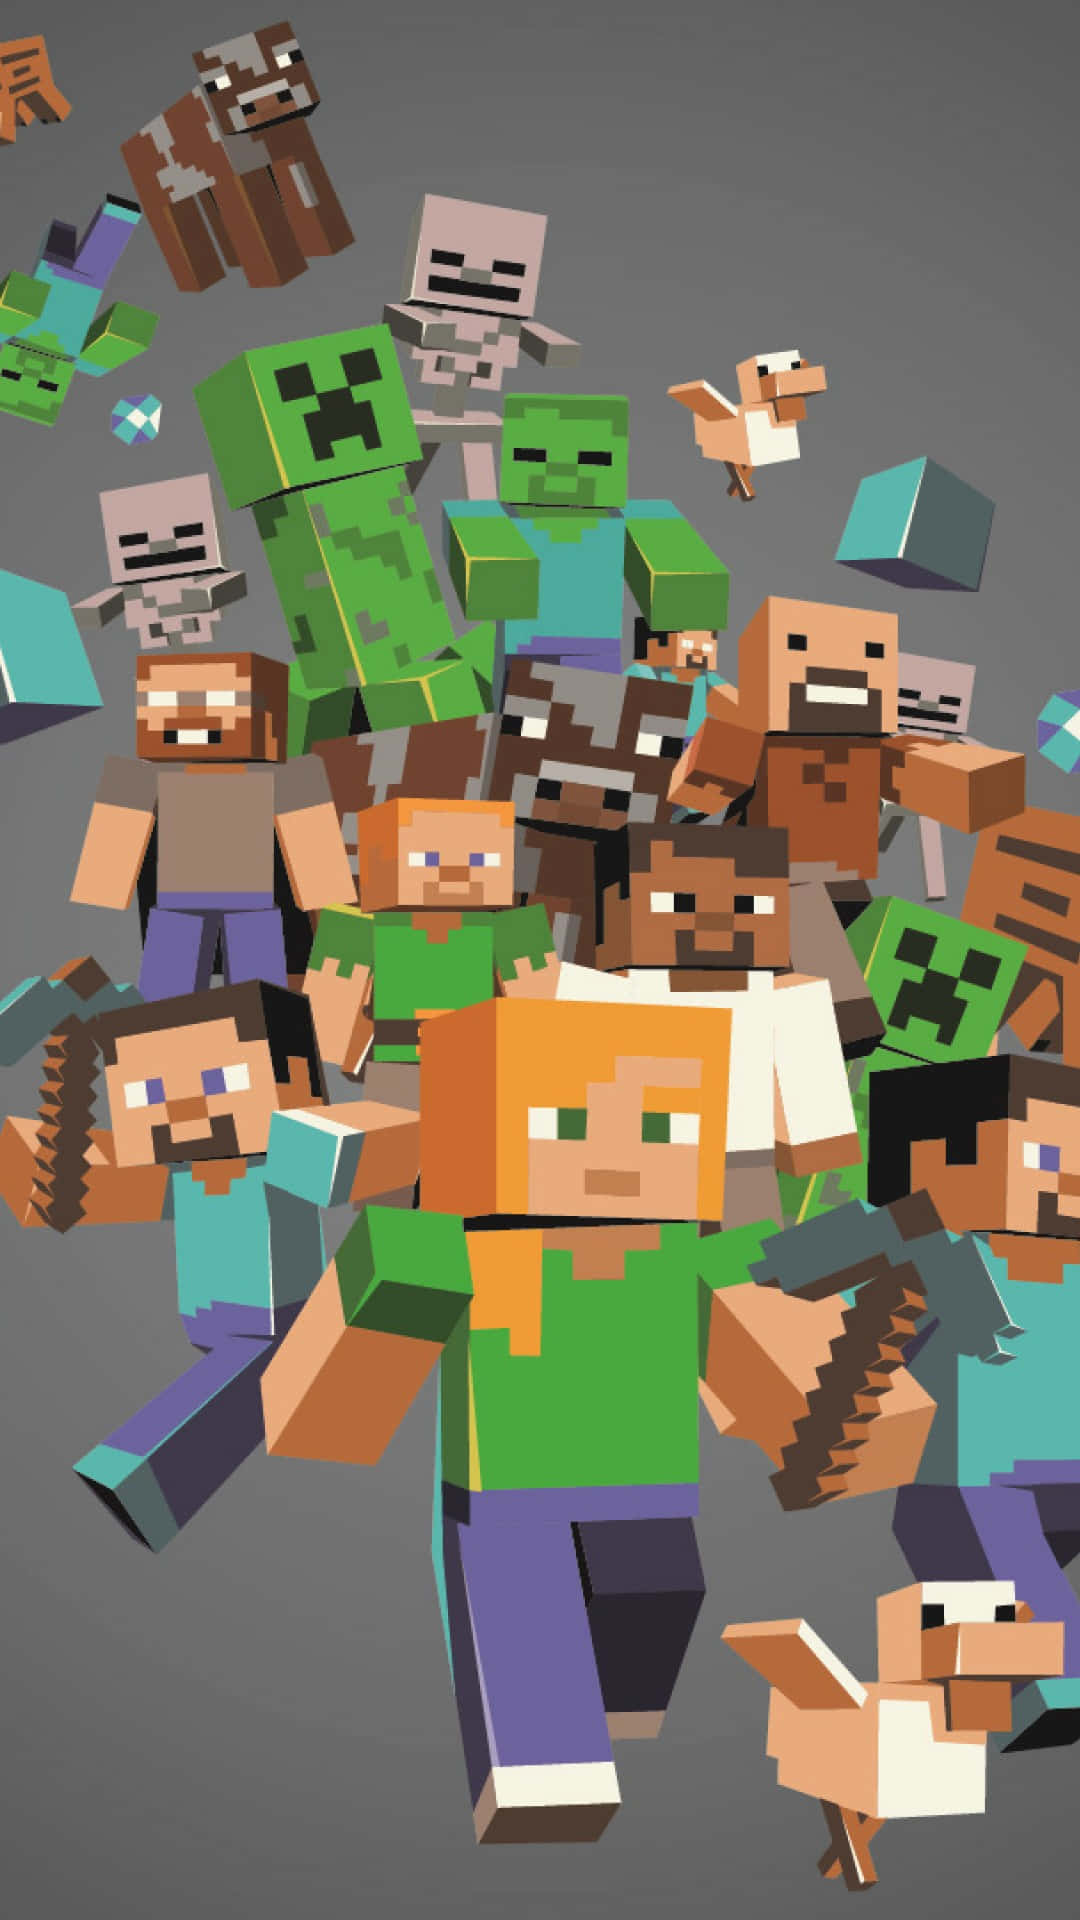 Jogadorescom Mobs Pixel 3 Plano De Fundo Do Minecraft.